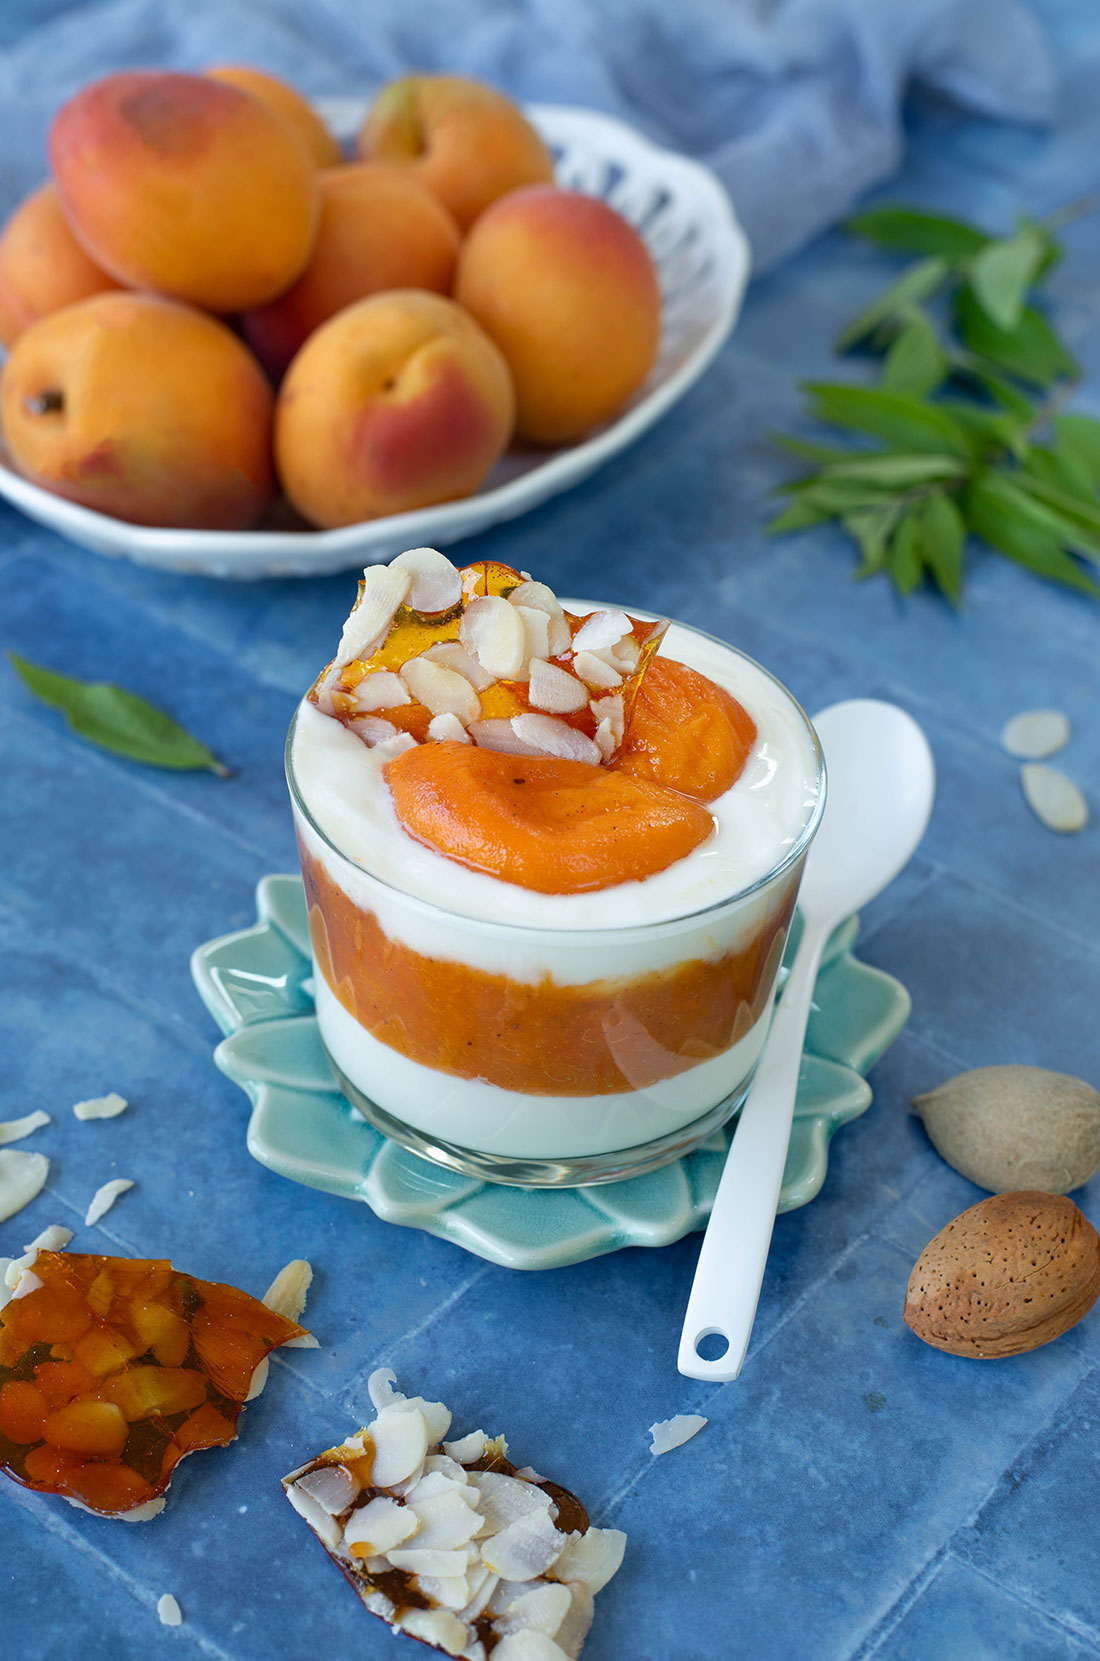 Trfile d'abricot au yaourt, recette fraiche et facile